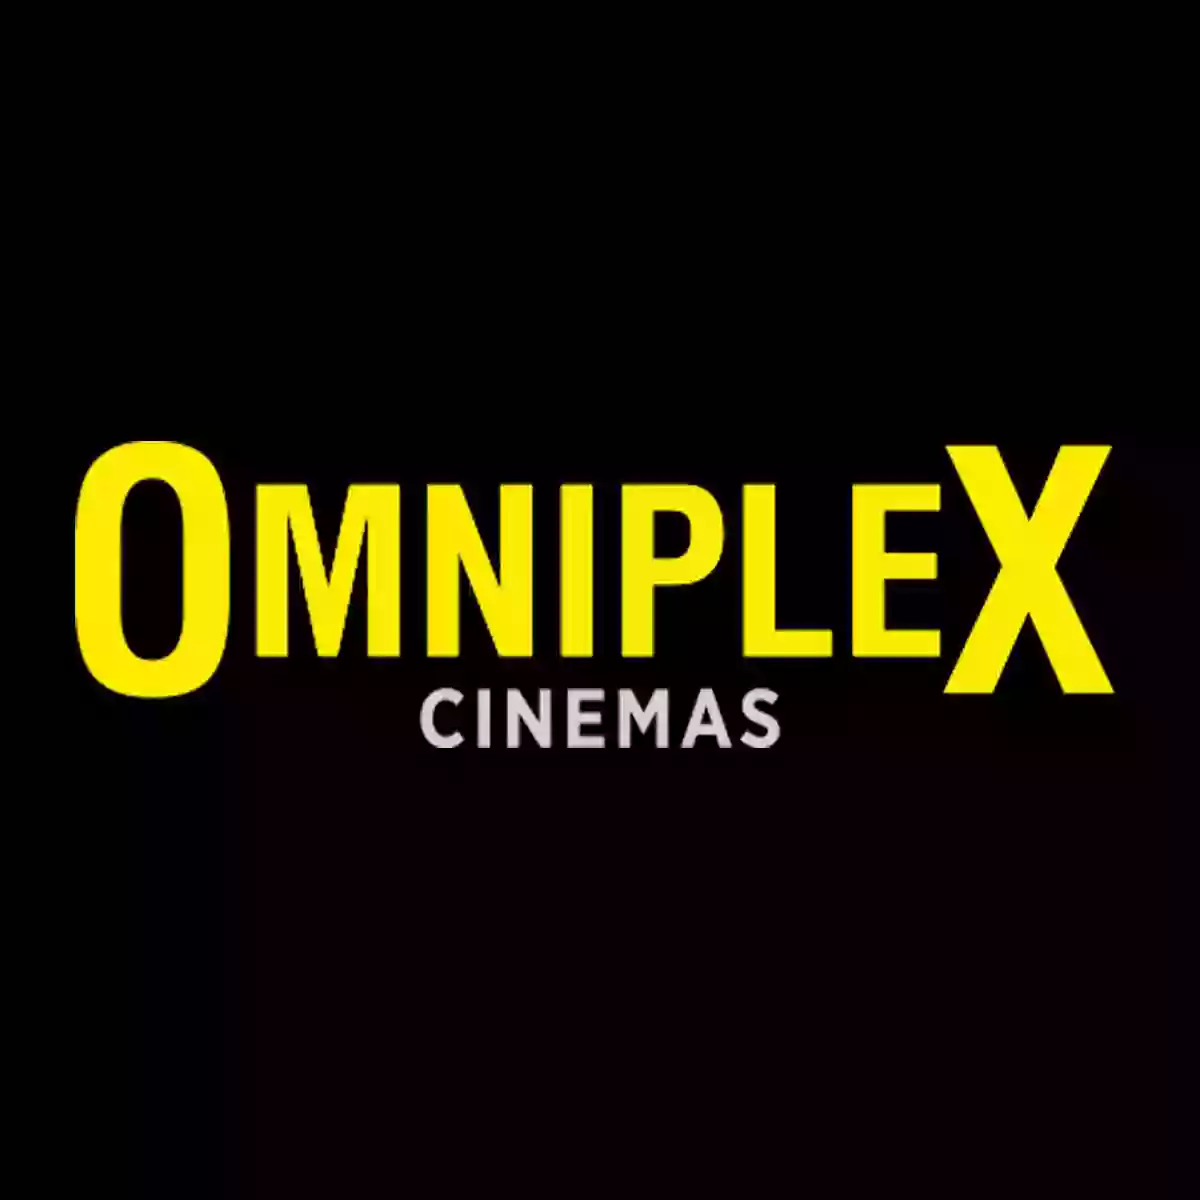 Omniplex Cinema Killarney